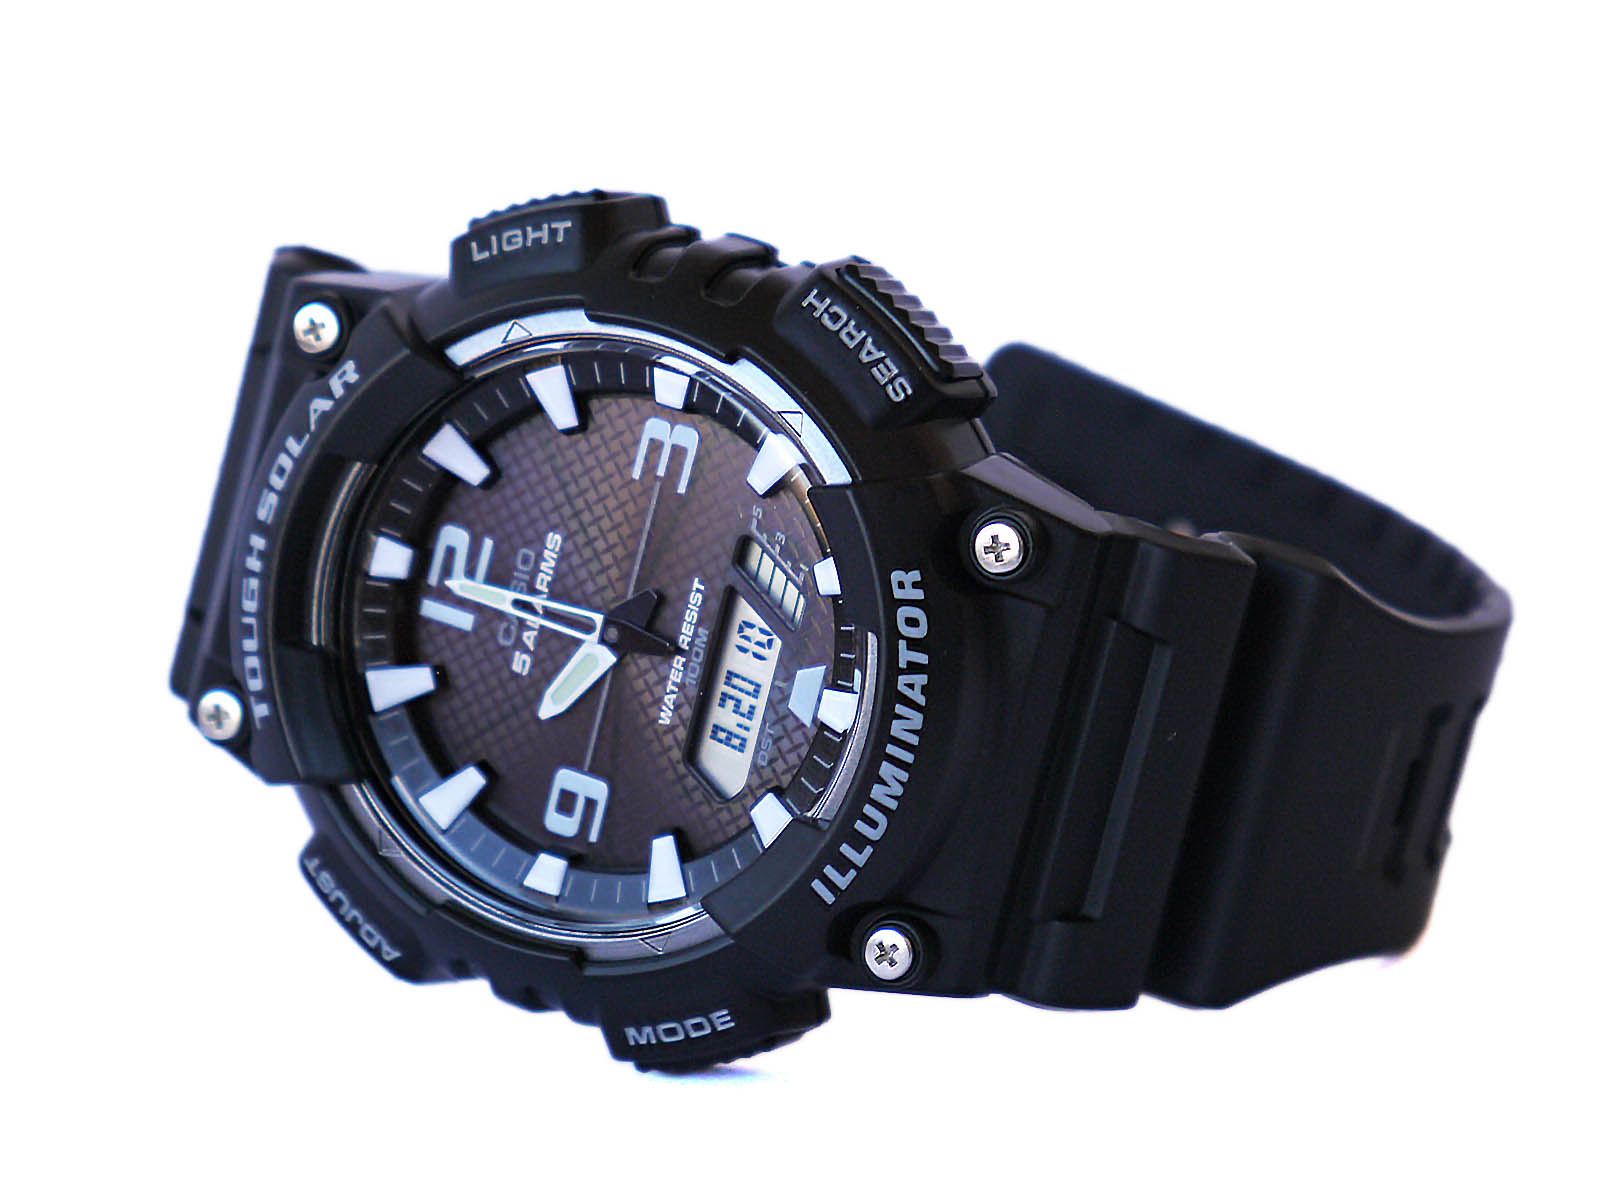 Casio-AQ-S810-1AV Tough Solar Digi-Analog Watch ⋆ High Quality Watch Gallery